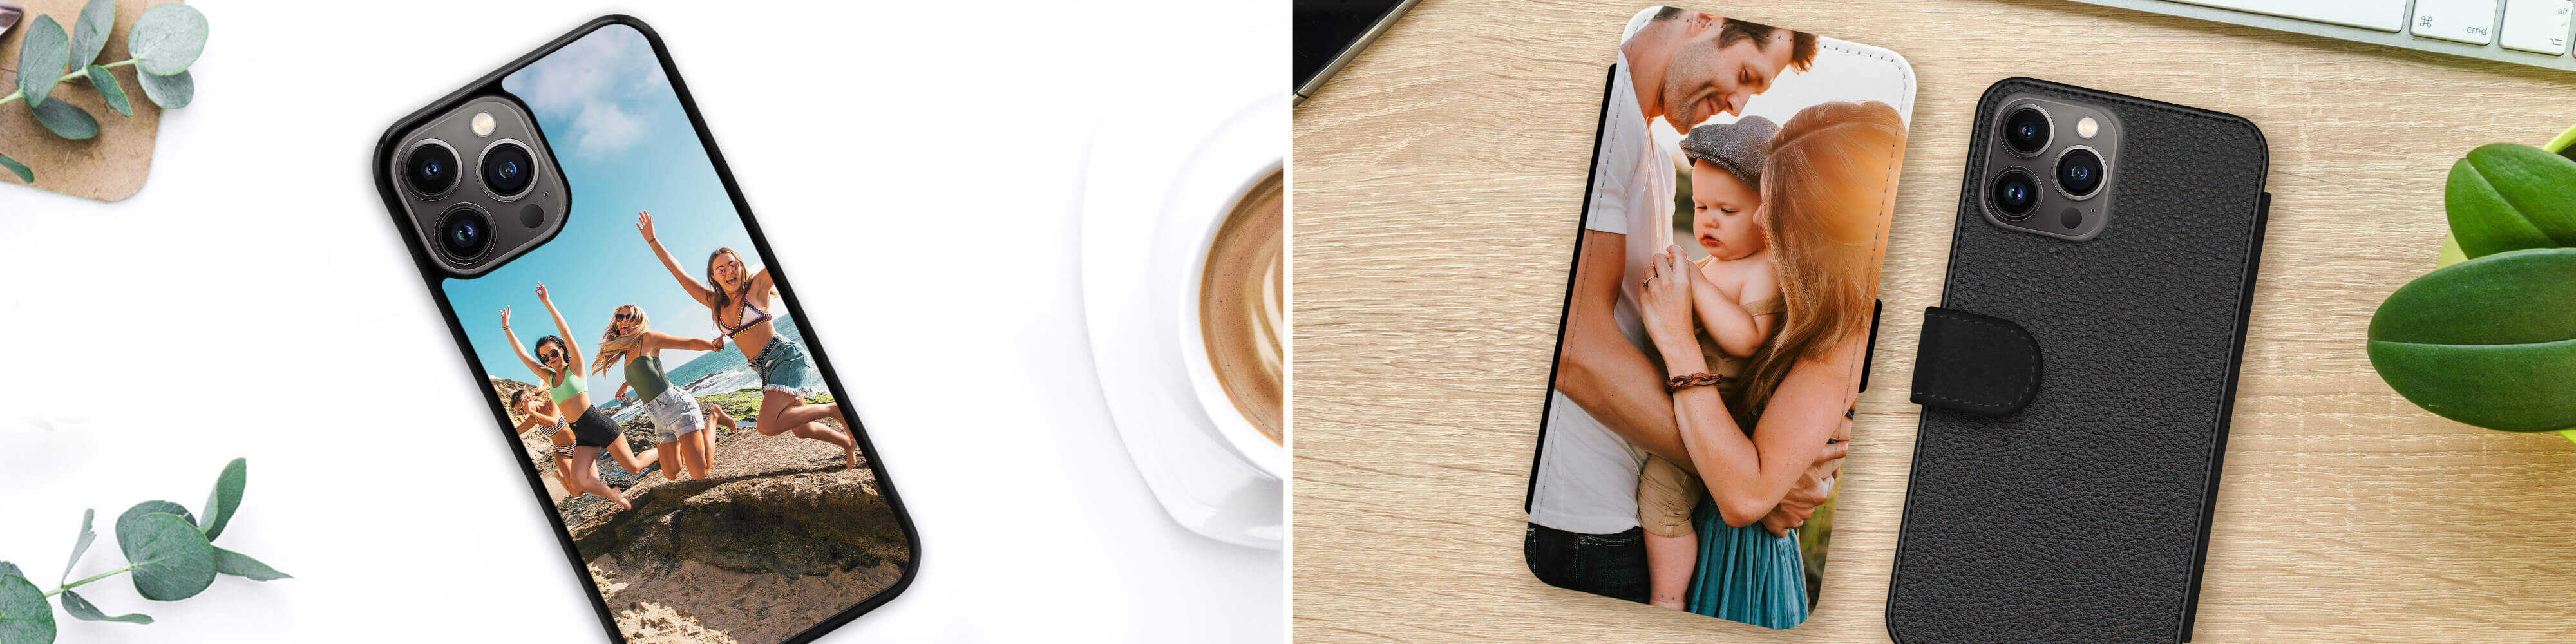 Personalisierte iPhone 13 Pro Max Hüllen mit eigenem Foto selbst gestalten